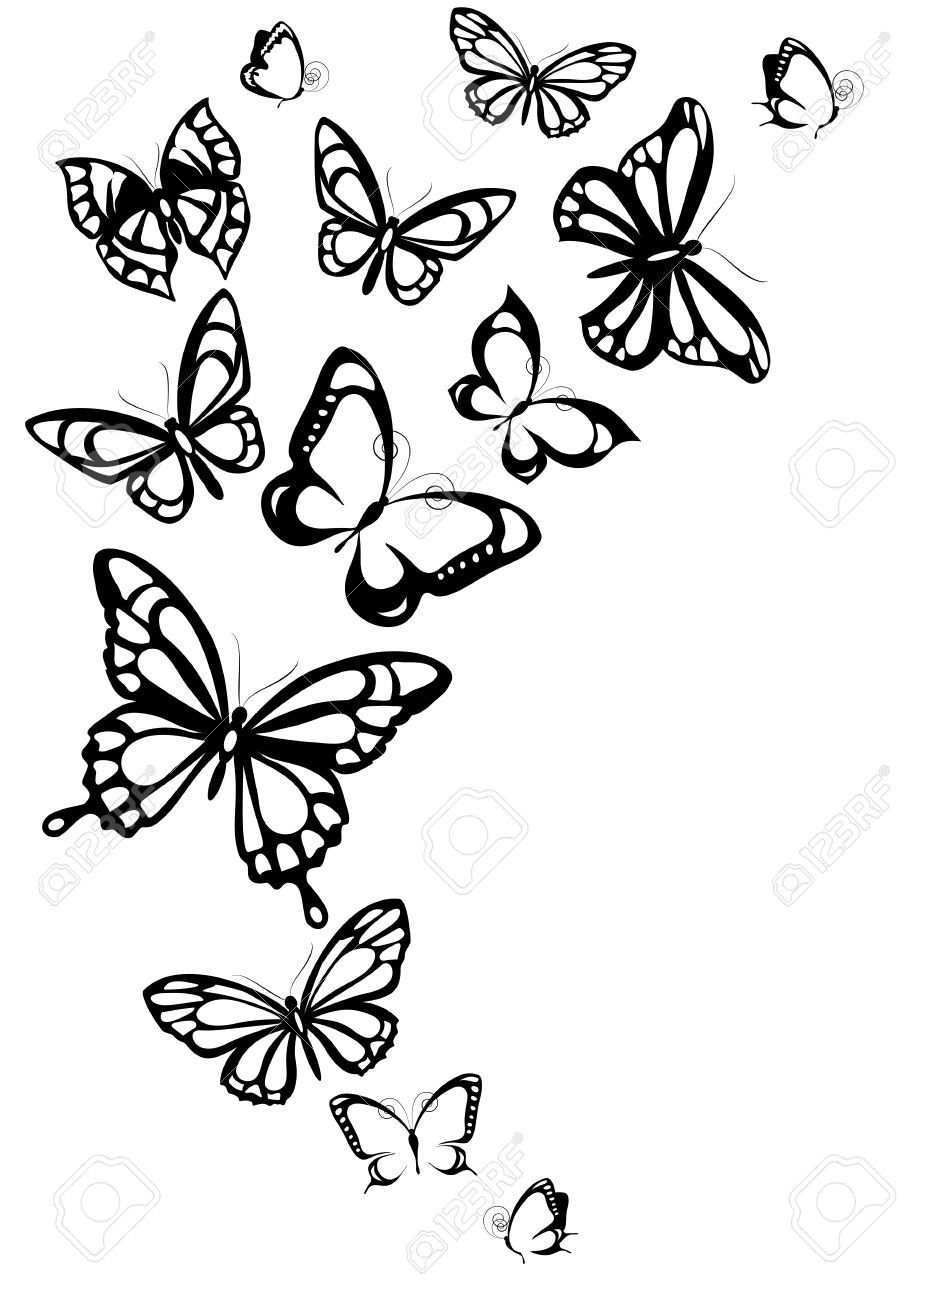 Schmetterlinge Design Schmetterlingszeichnung Schmetterling Zeichnen Schmetterling Tattoo Vorlage